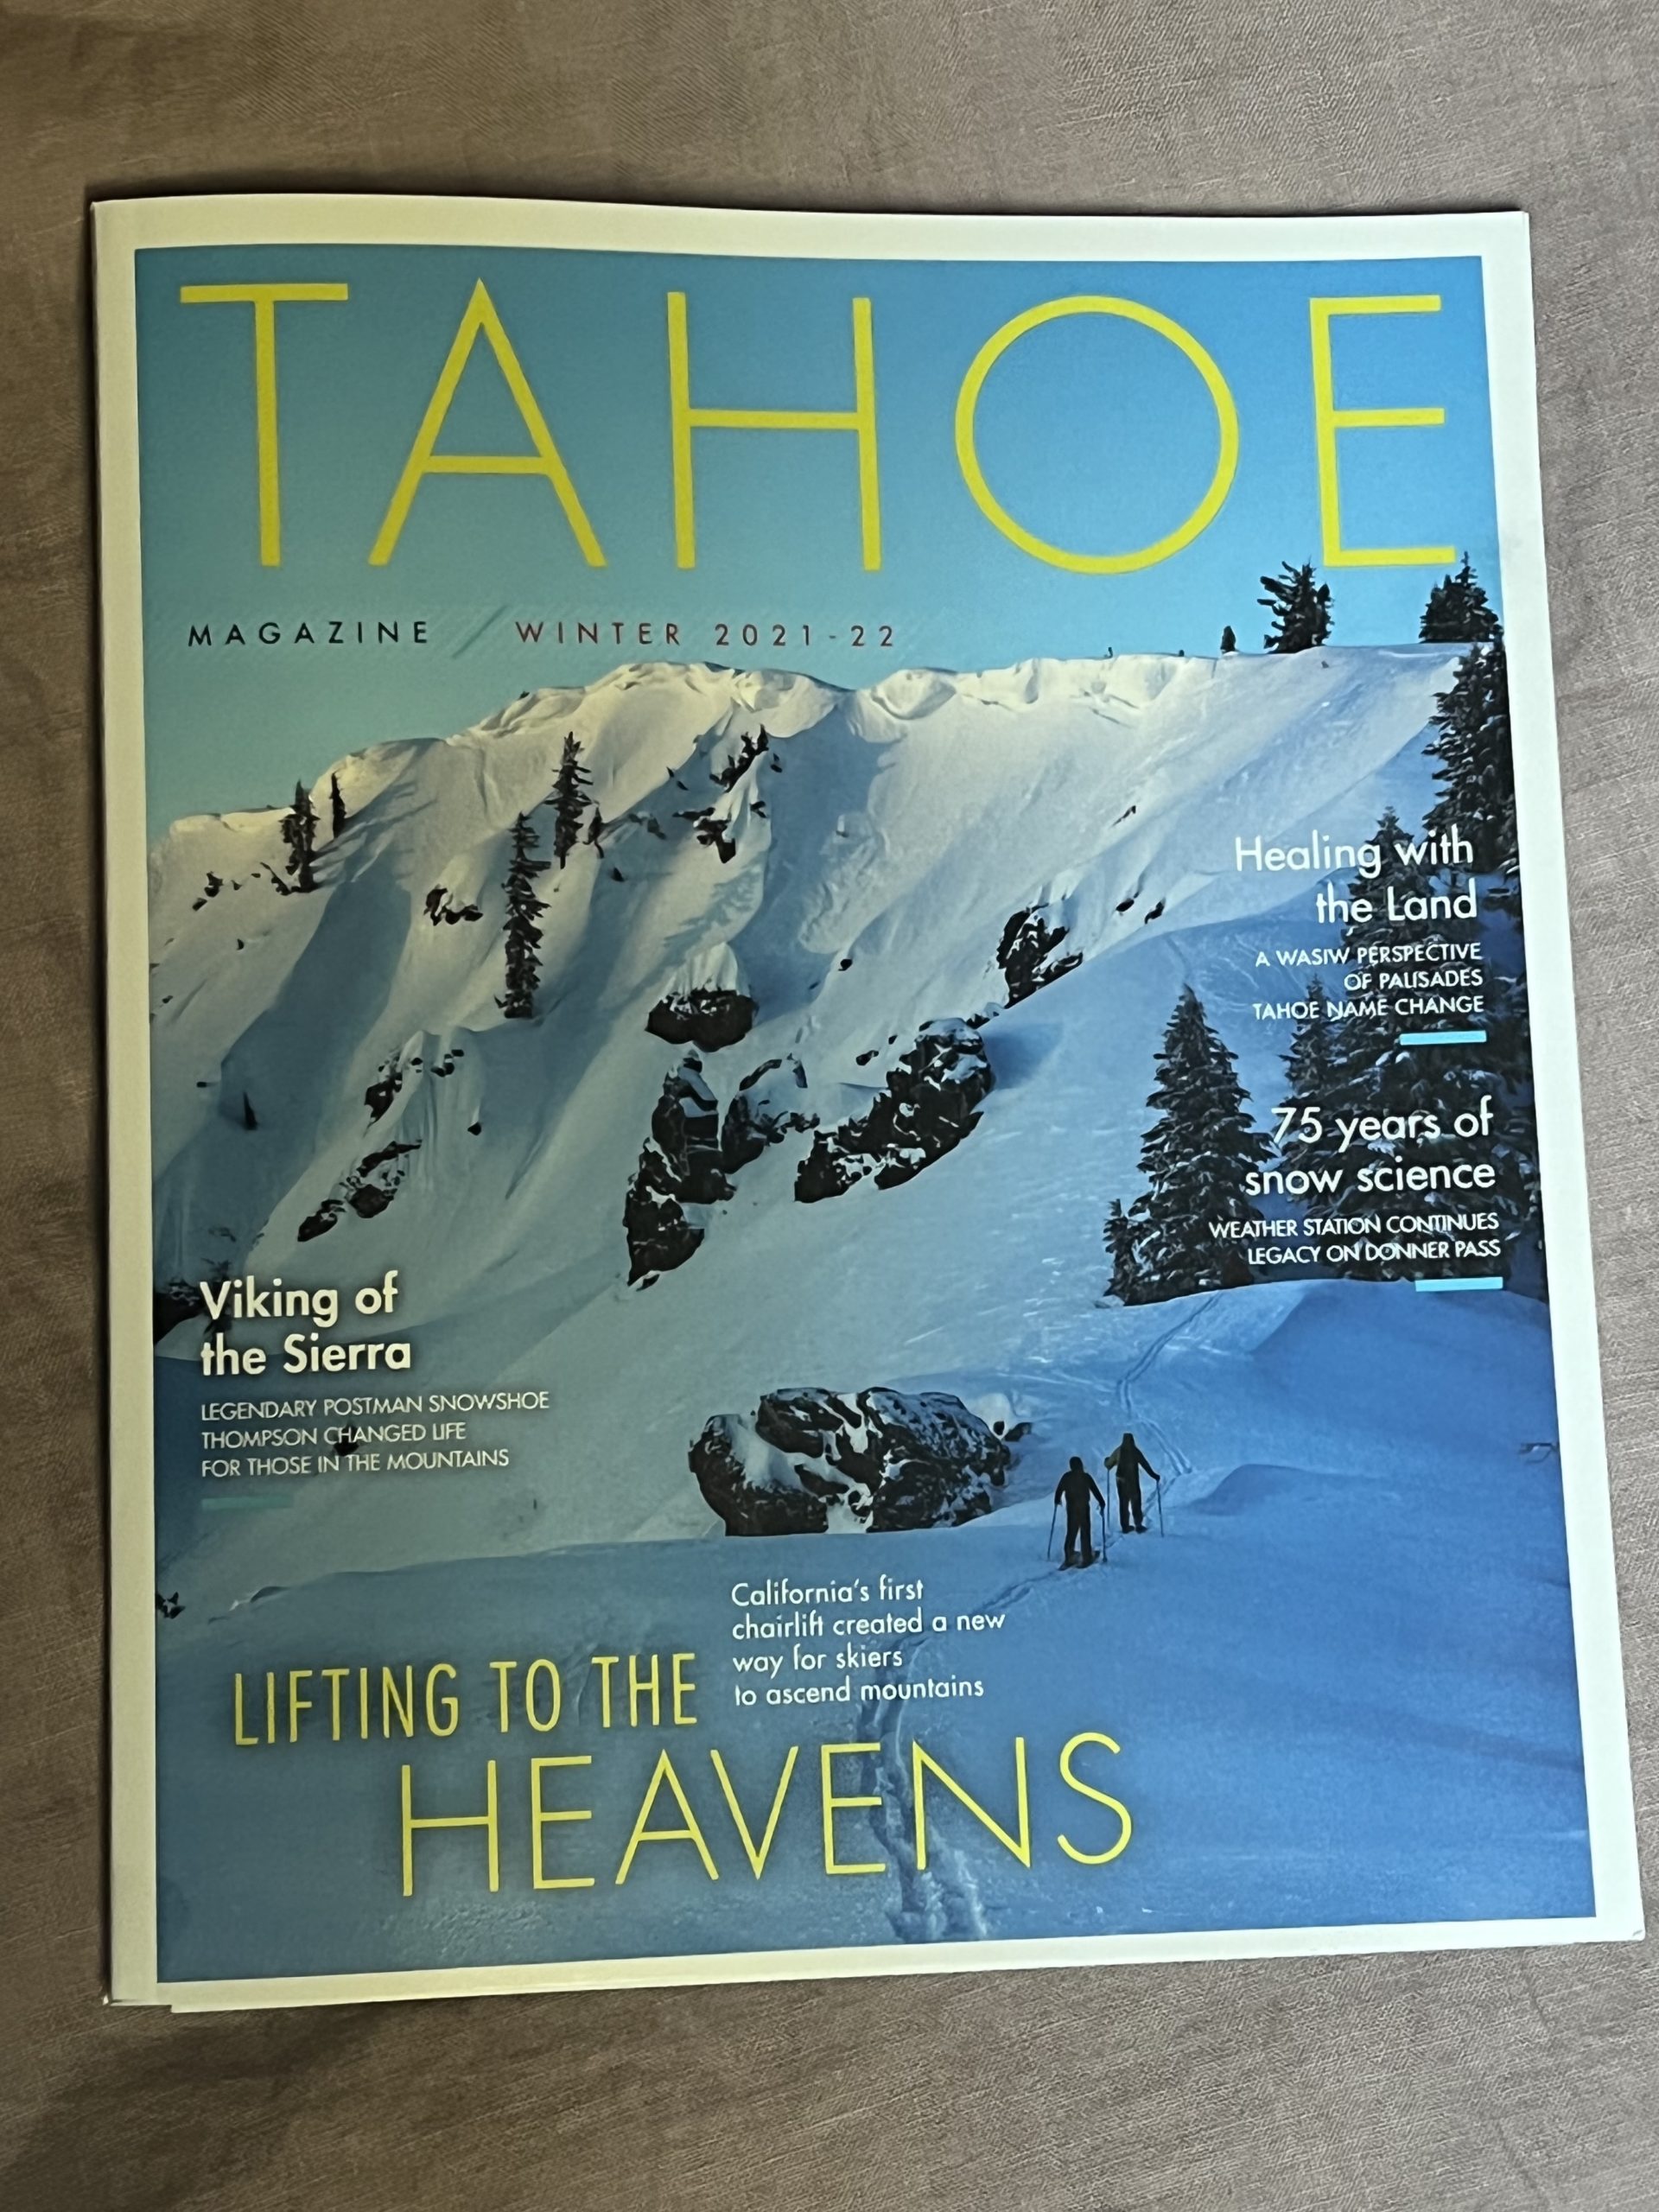 Cetak Mag Ski Stoke |  Sampul Majalah Tahoe, Penyebaran Foto dan Artikel Majalah Backcountry